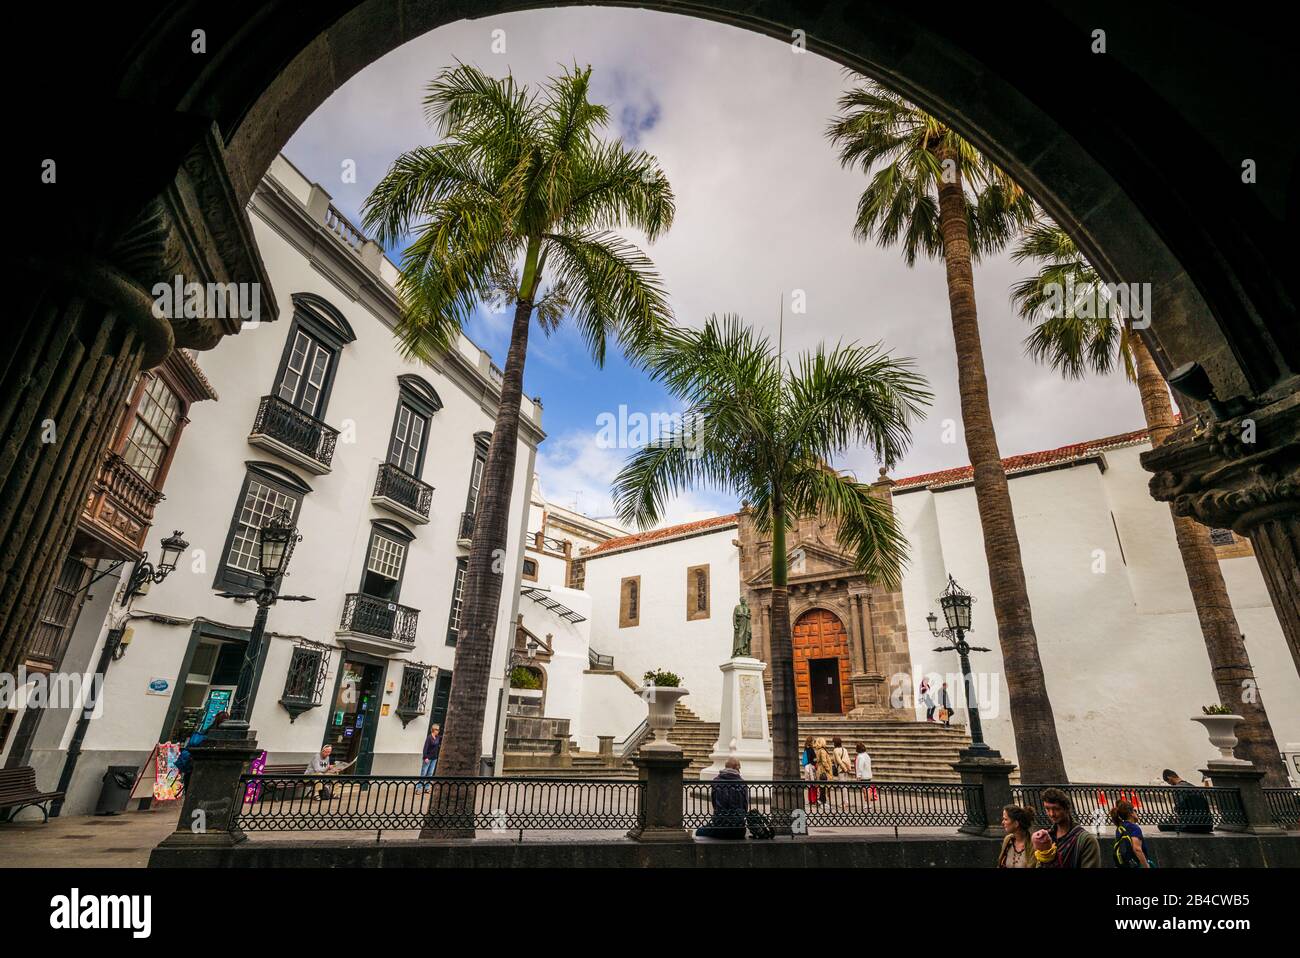 Spain, Canary Islands, La Palma Island, Santa Cruz de la Palma, Plaza Espana, Iglesia del Salvador church, exterior Stock Photo